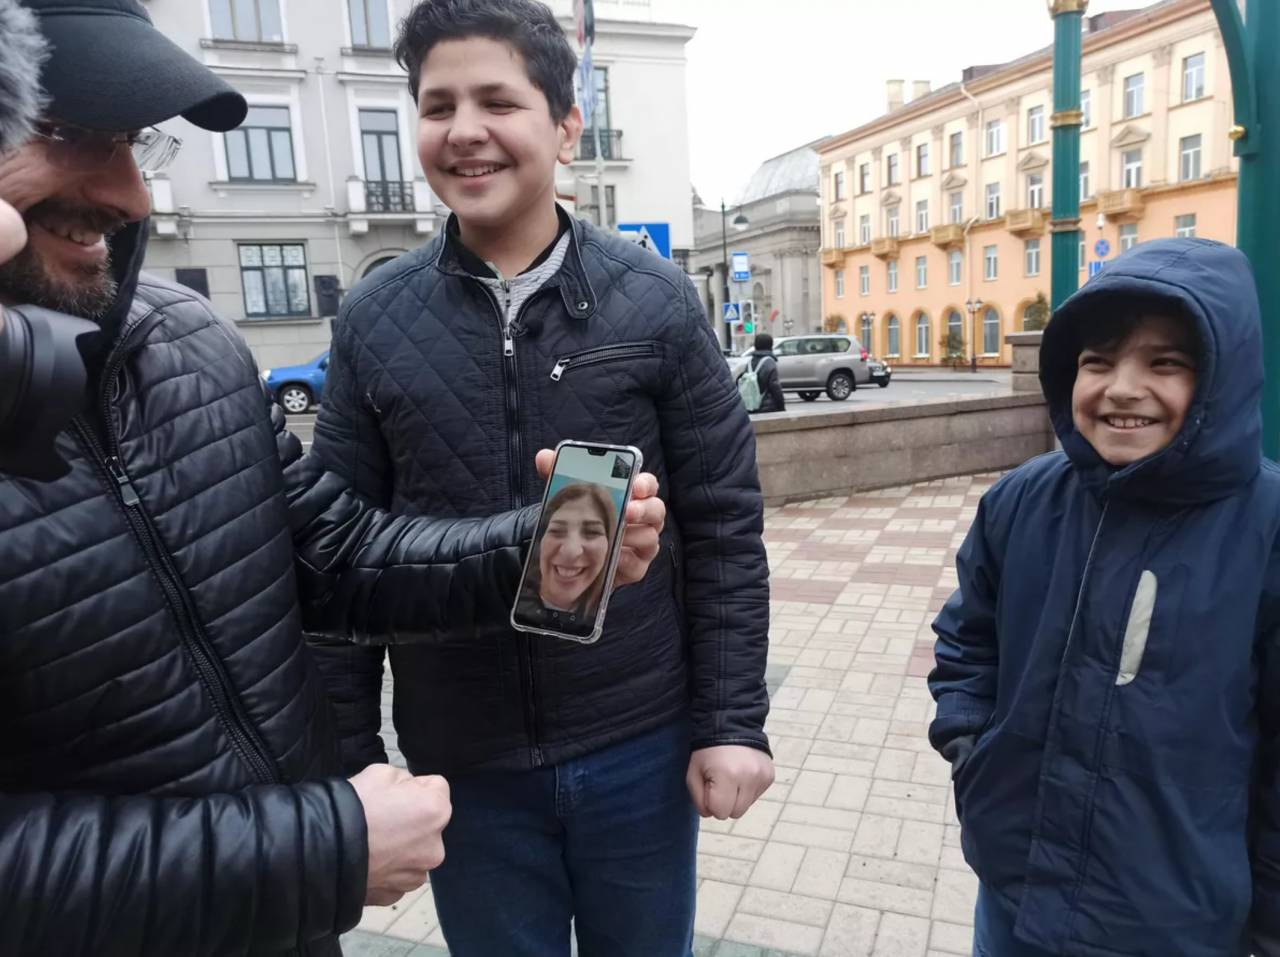 Мать прорвалась, а детей выдворили в Беларусь: история потерявшихся на белорусско-польской границе детей мигрантов